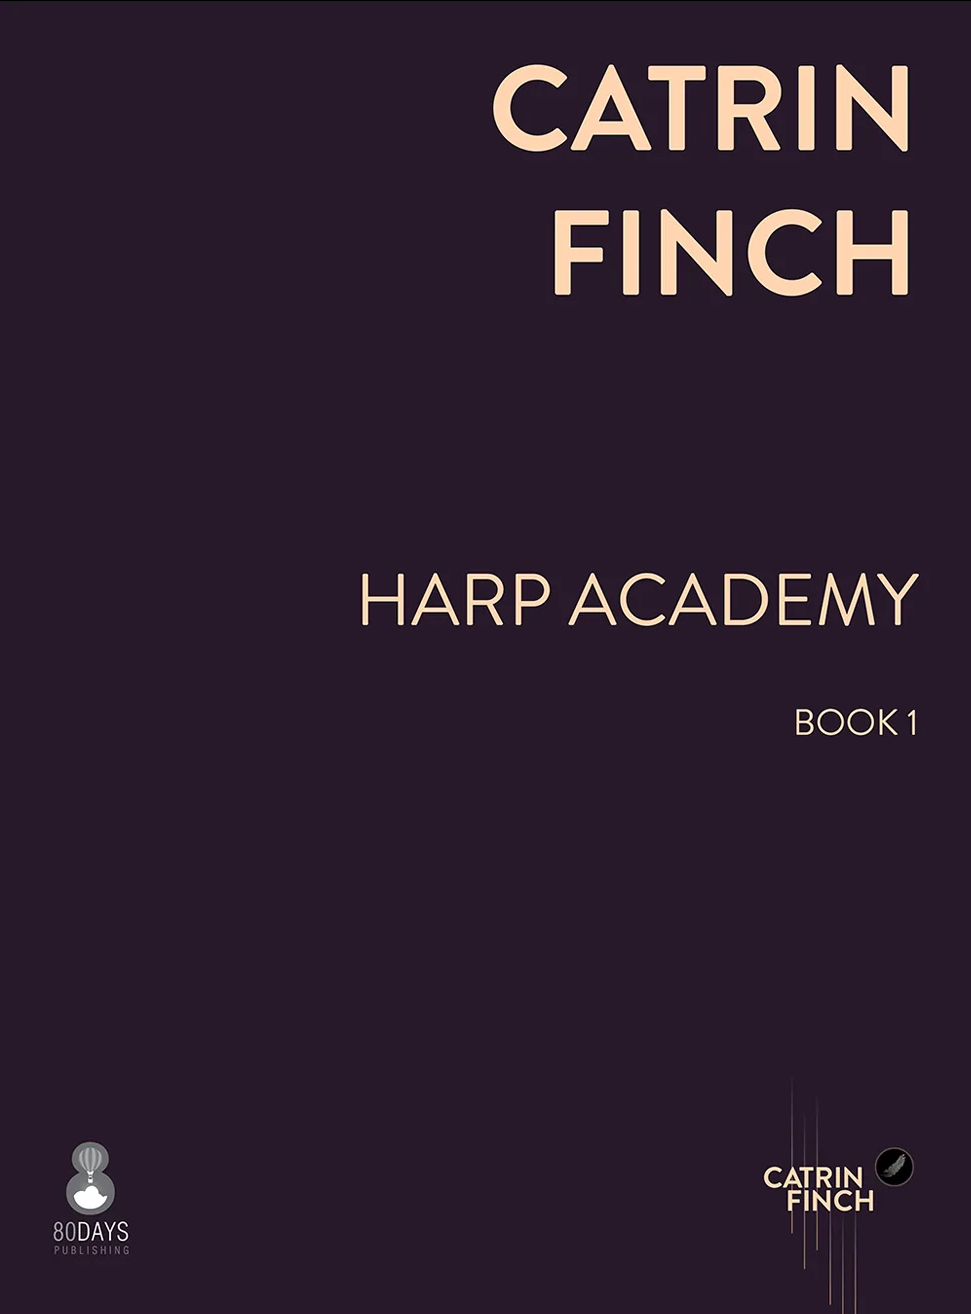 Harp Academy Book 1 - Catrin Finch